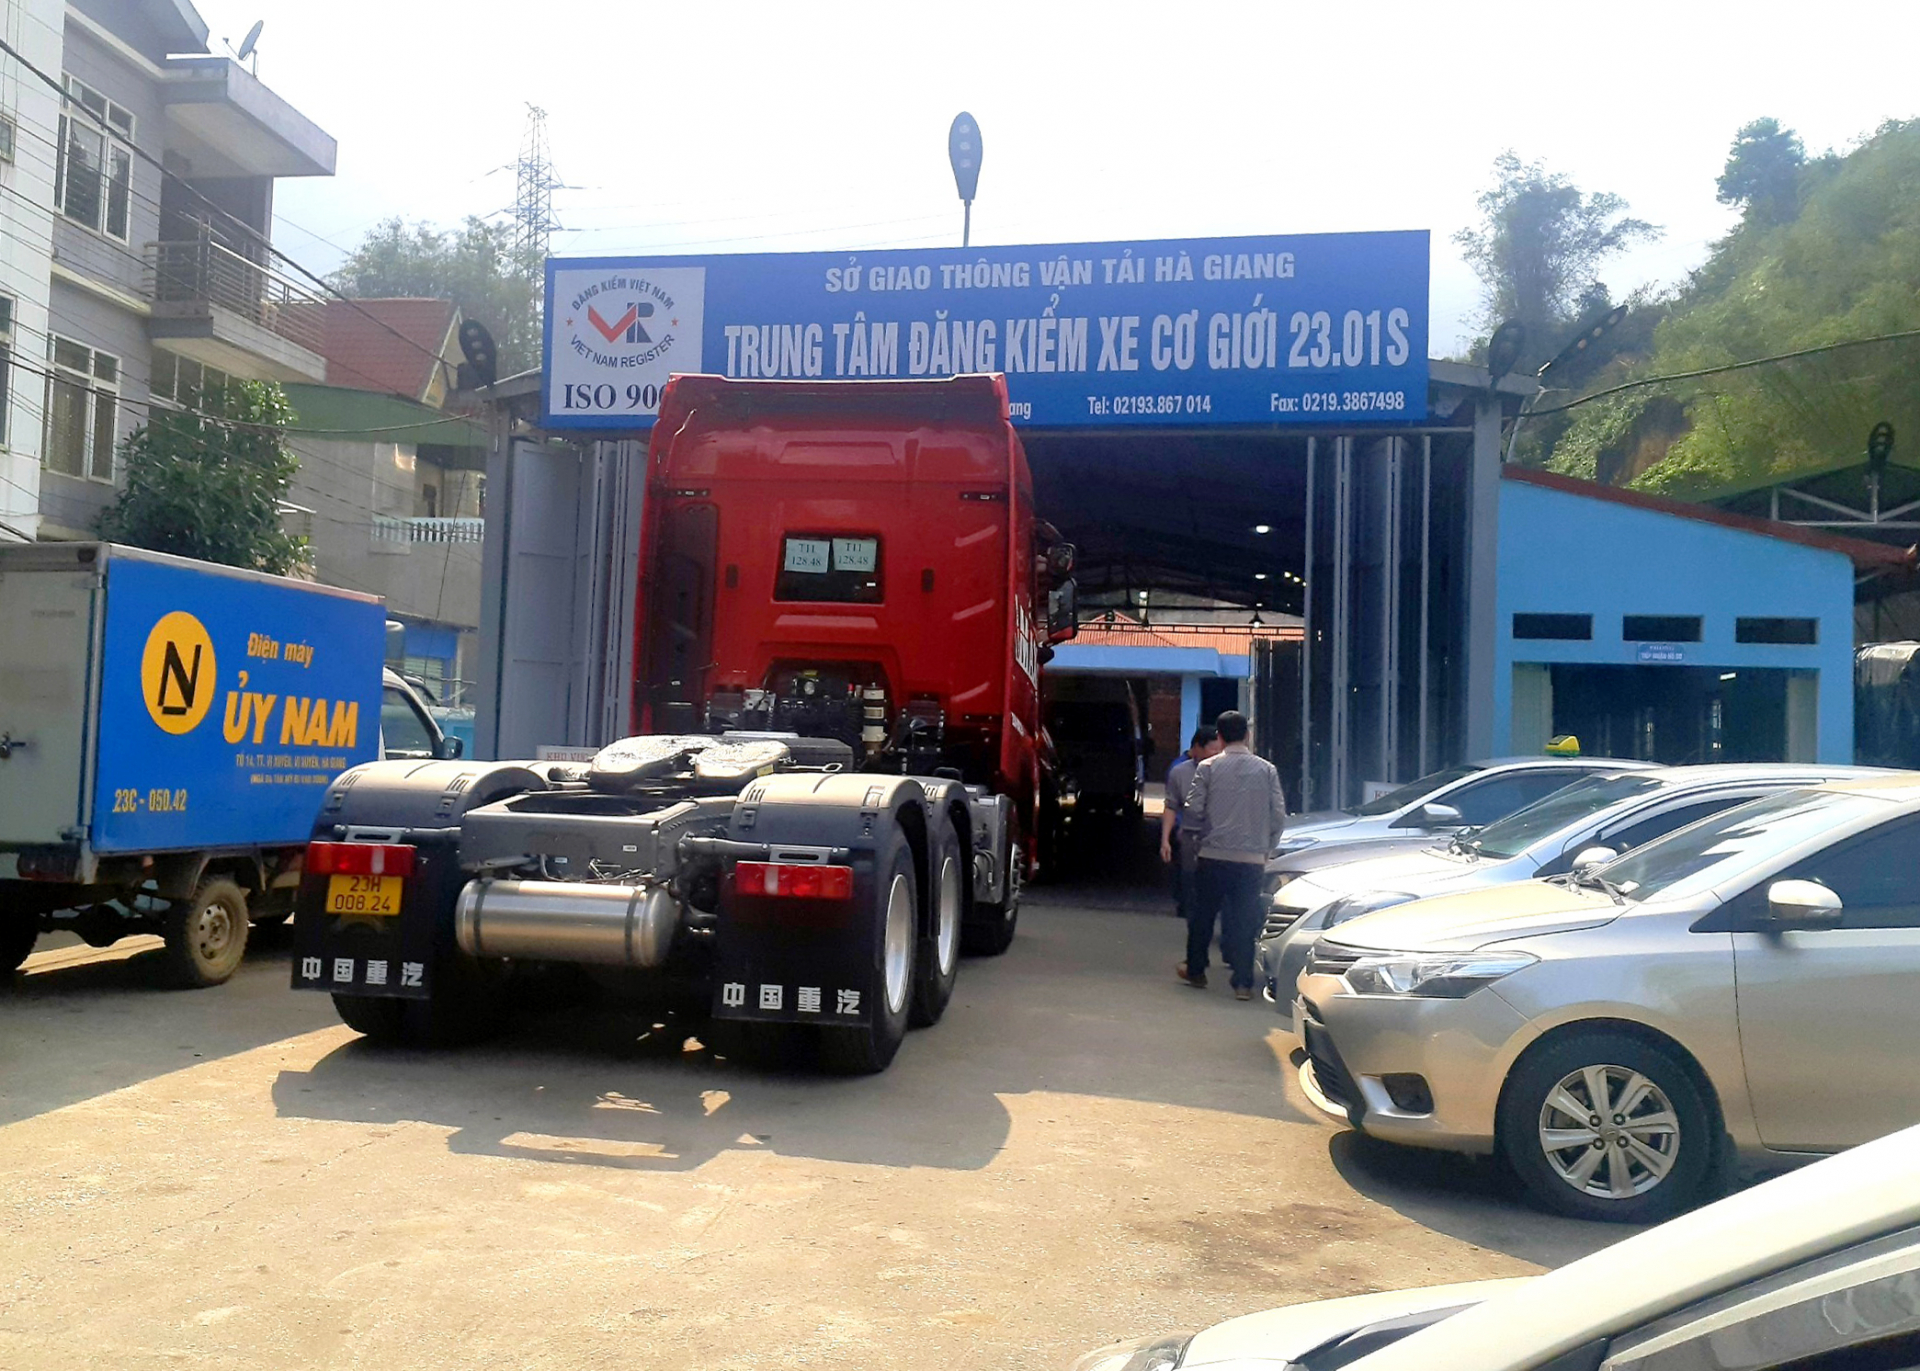 Trung tâm Đăng kiểm xe cơ giới Hà Giang mở cửa hoạt động sau 1,5 ngày tạm ngừng dịch vụ kiểm định xe cơ giới.